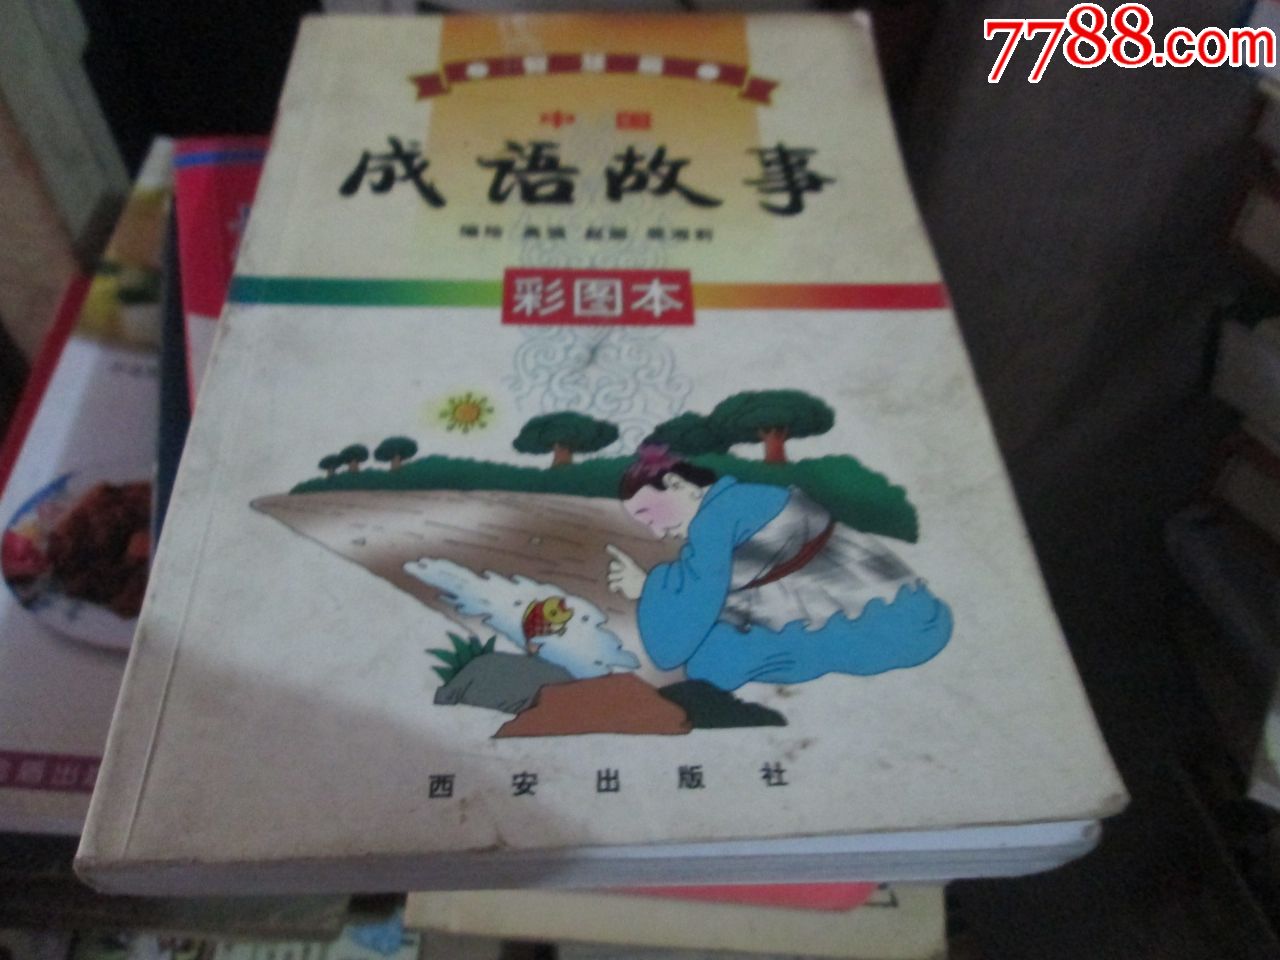 中国成语故事(彩图本)高峰赵丽裴湘莉西安出版